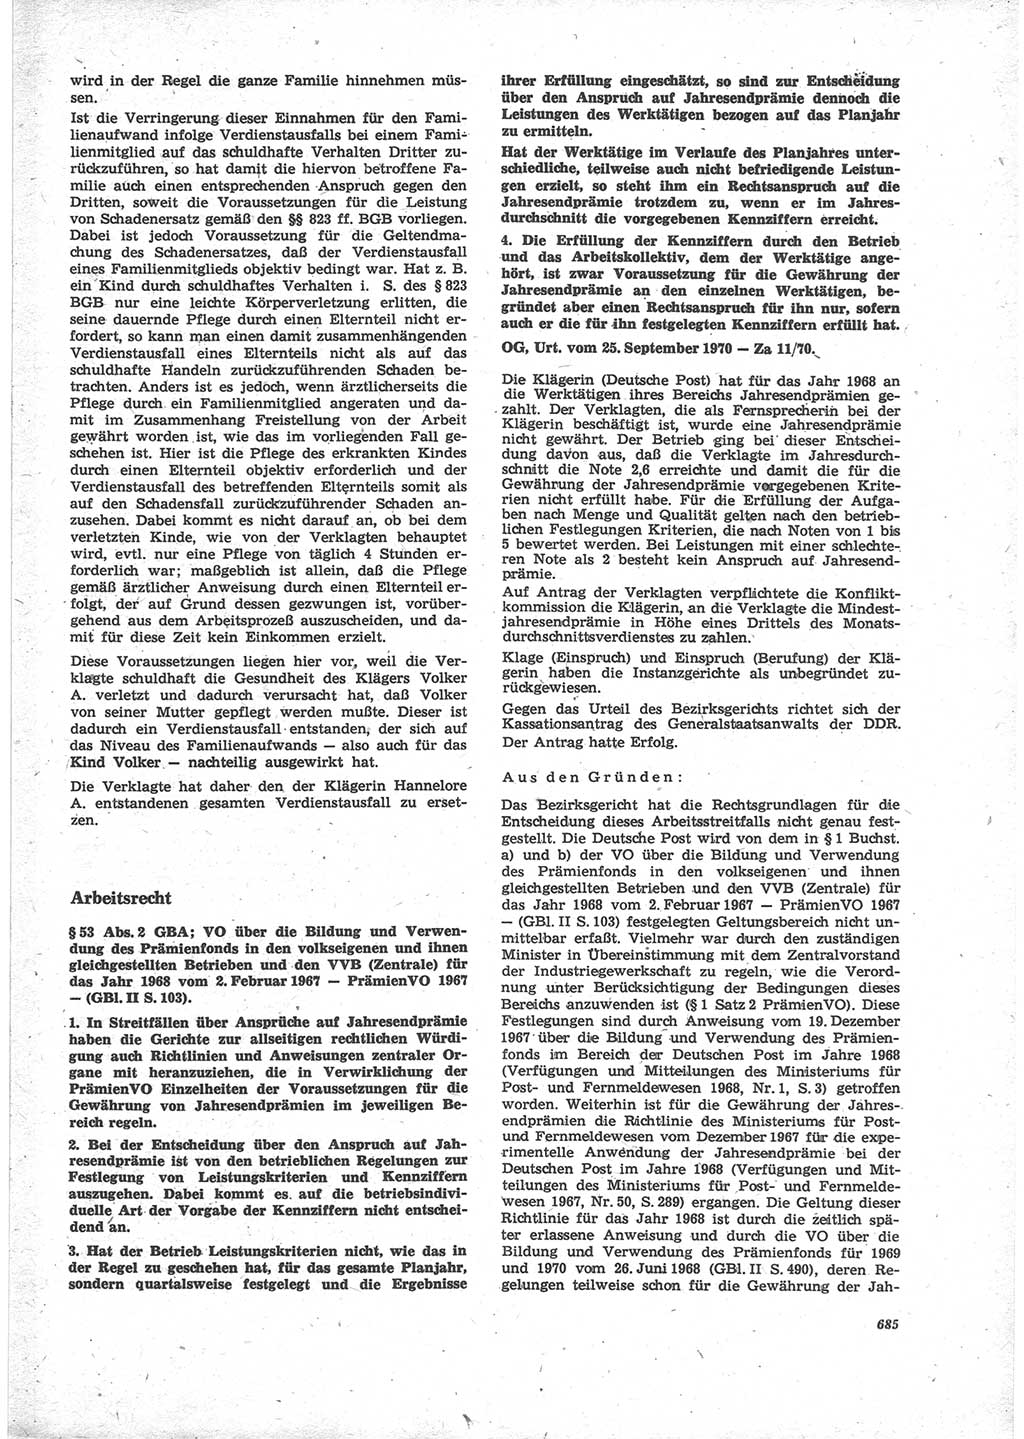 Neue Justiz (NJ), Zeitschrift für Recht und Rechtswissenschaft [Deutsche Demokratische Republik (DDR)], 24. Jahrgang 1970, Seite 685 (NJ DDR 1970, S. 685)